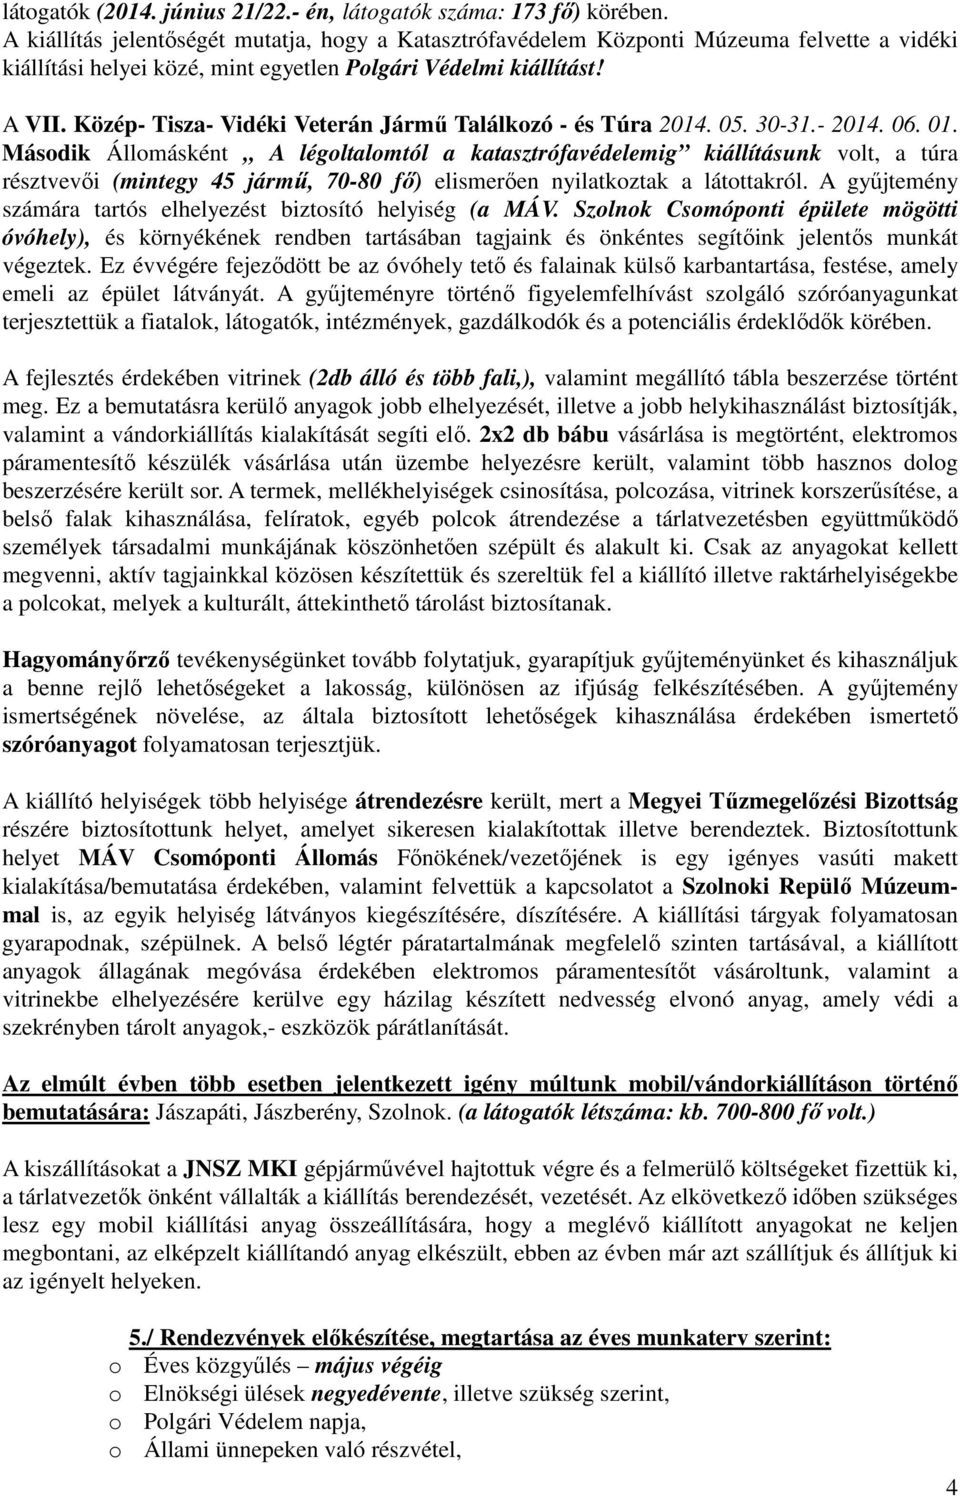 Közép- Tisza- Vidéki Veterán Jármű Találkozó - és Túra 2014. 05. 30-31.- 2014. 06. 01.